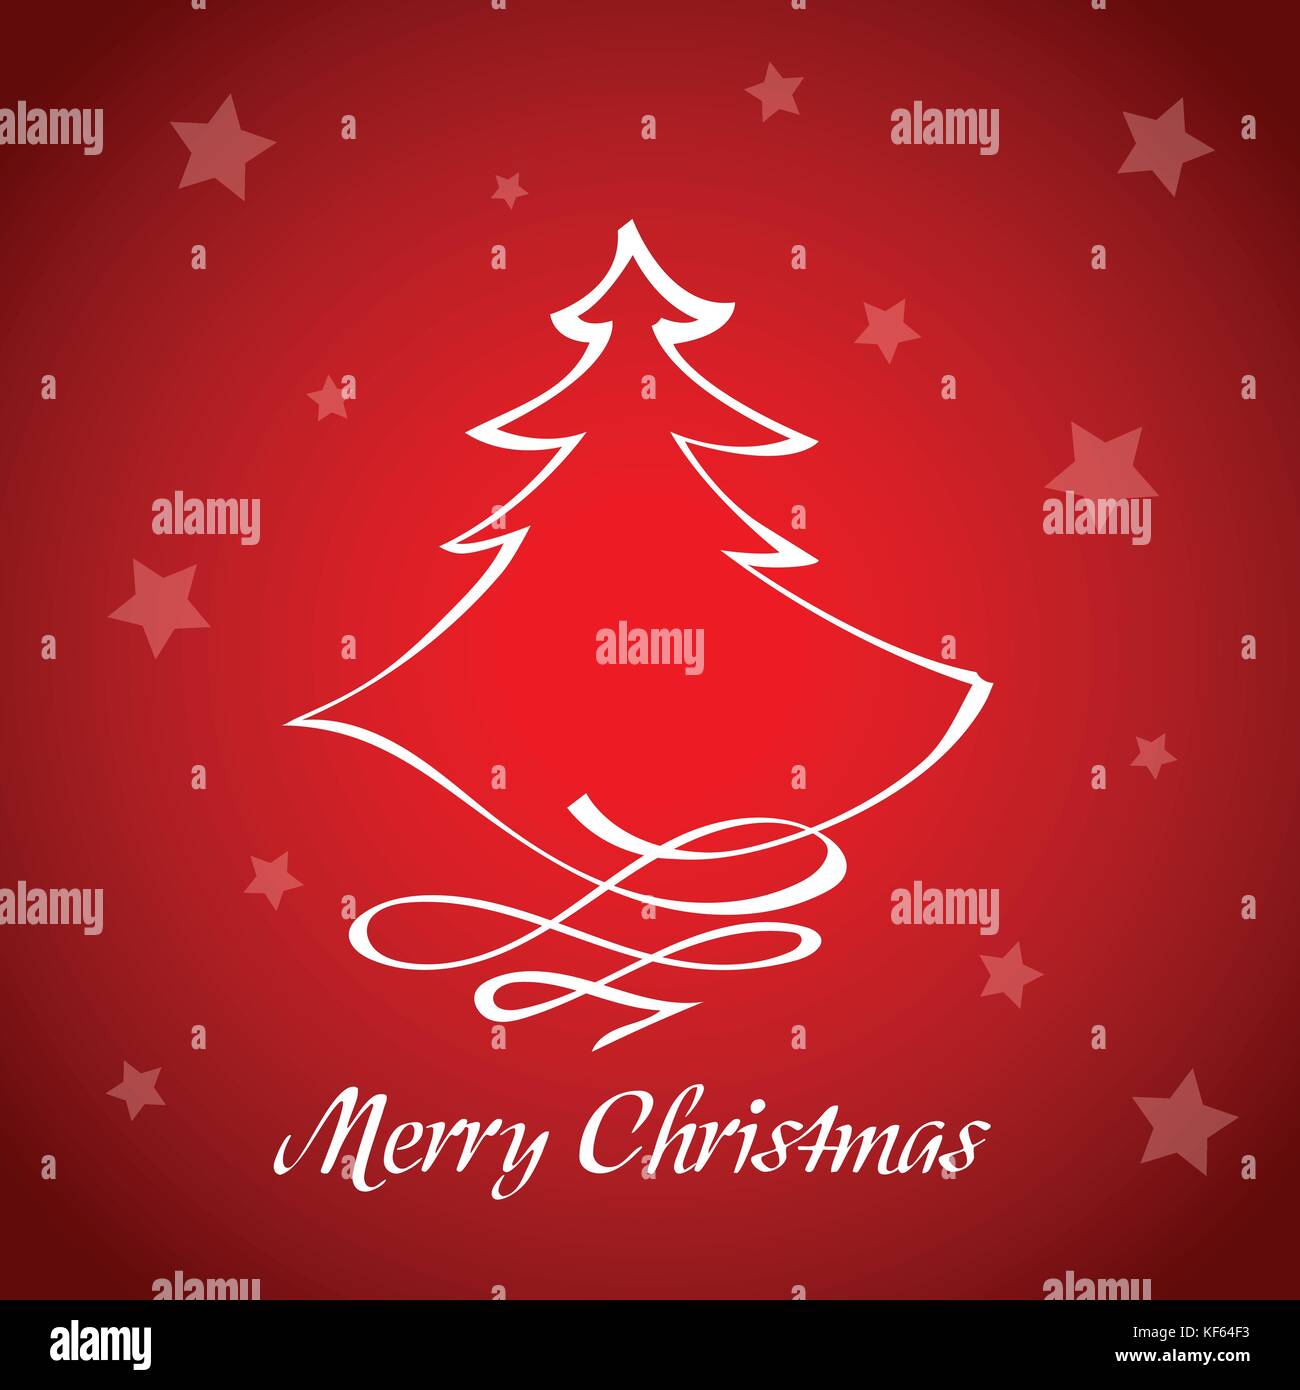 Auguri Per Natale.Disegnate A Mano Illustrazione Vettoriale Di Un Rosso Biglietto Di Auguri Per Natale Con Un Albero E Stelle Immagine E Vettoriale Alamy